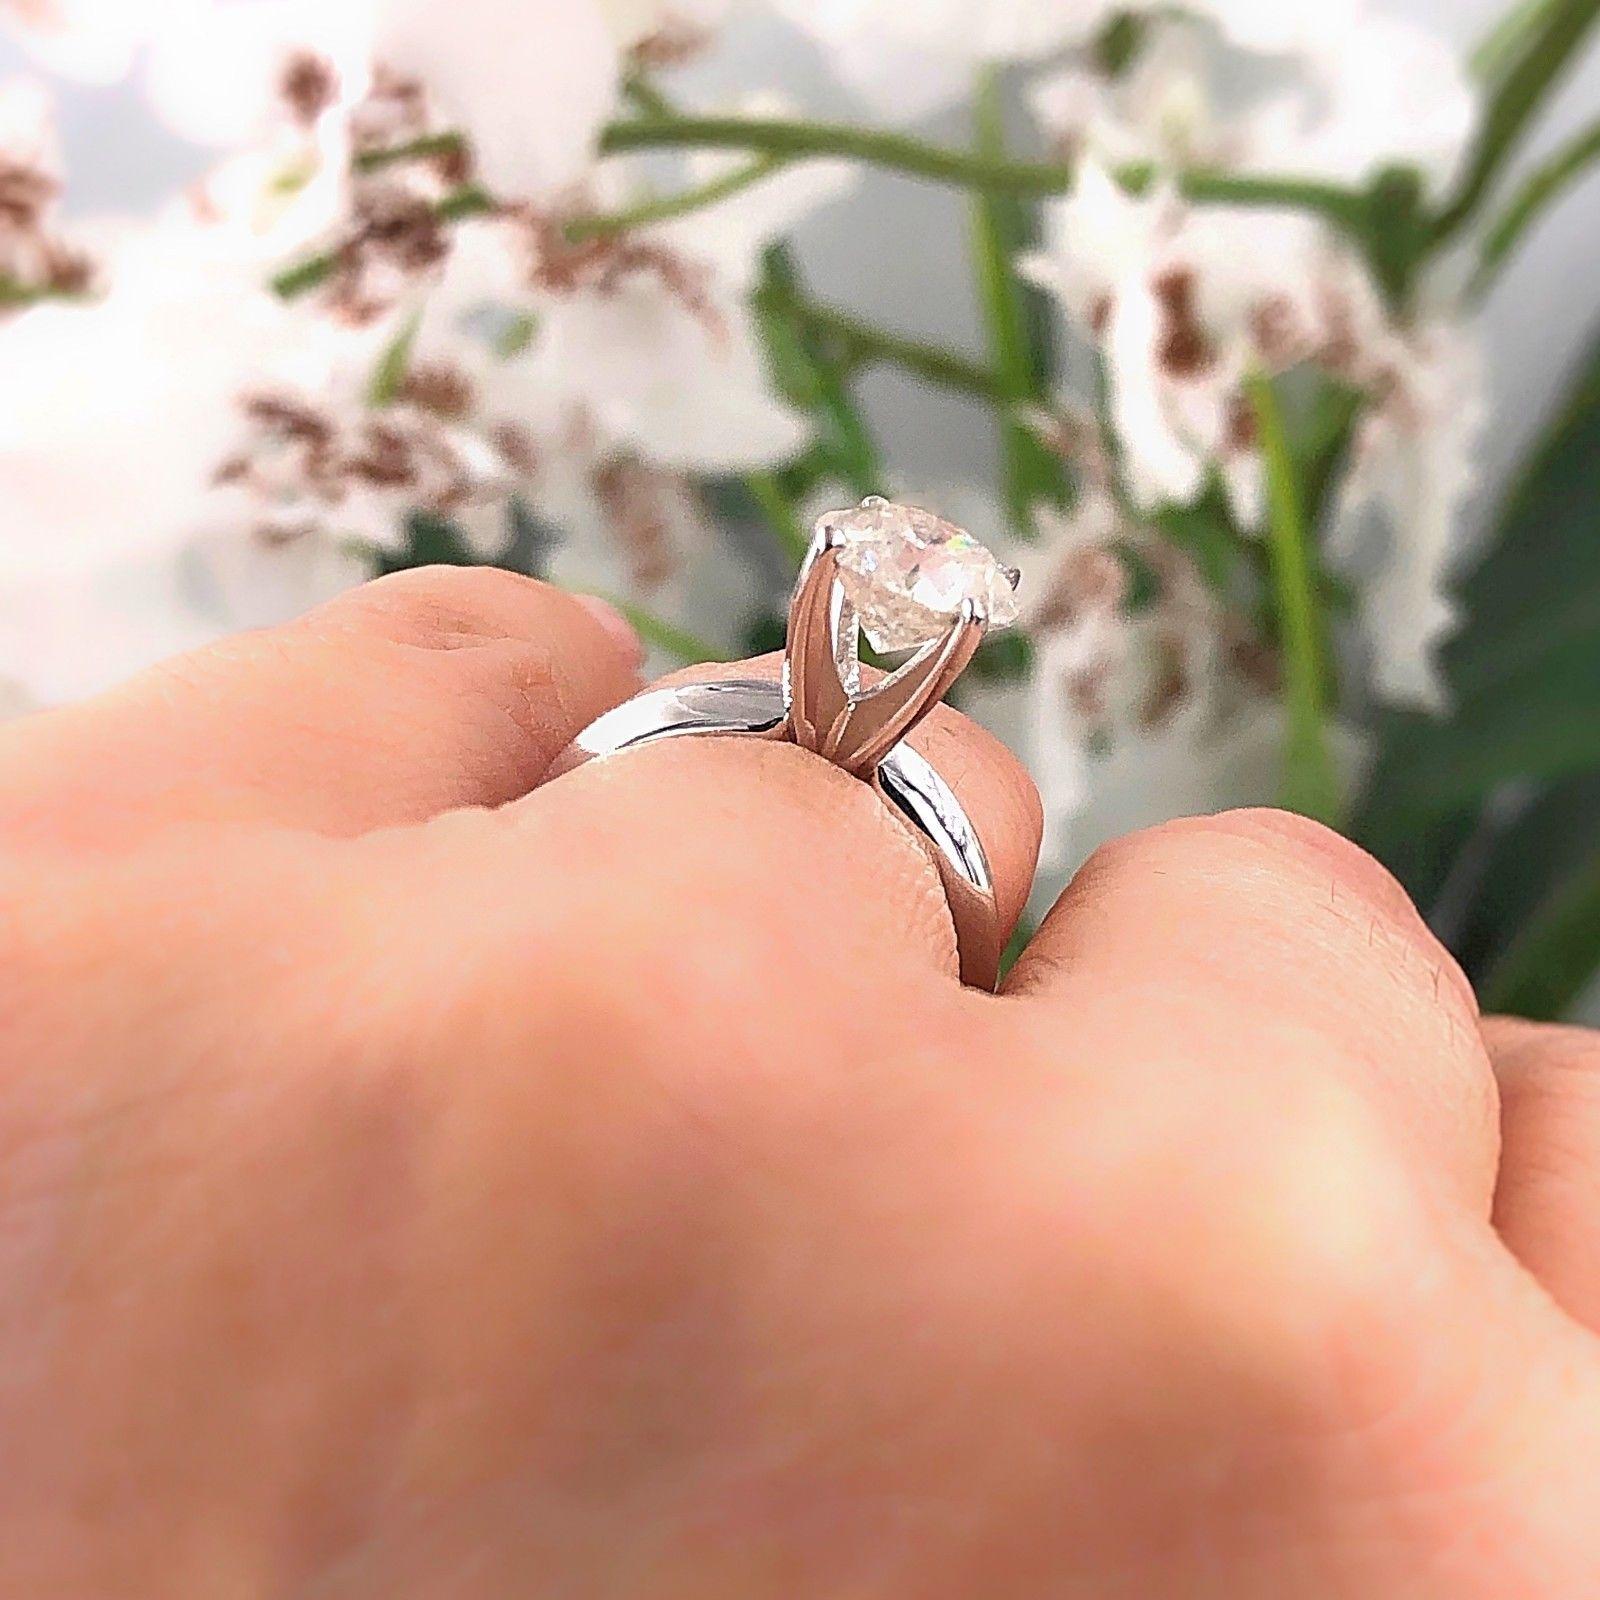 14 carat diamond ring price